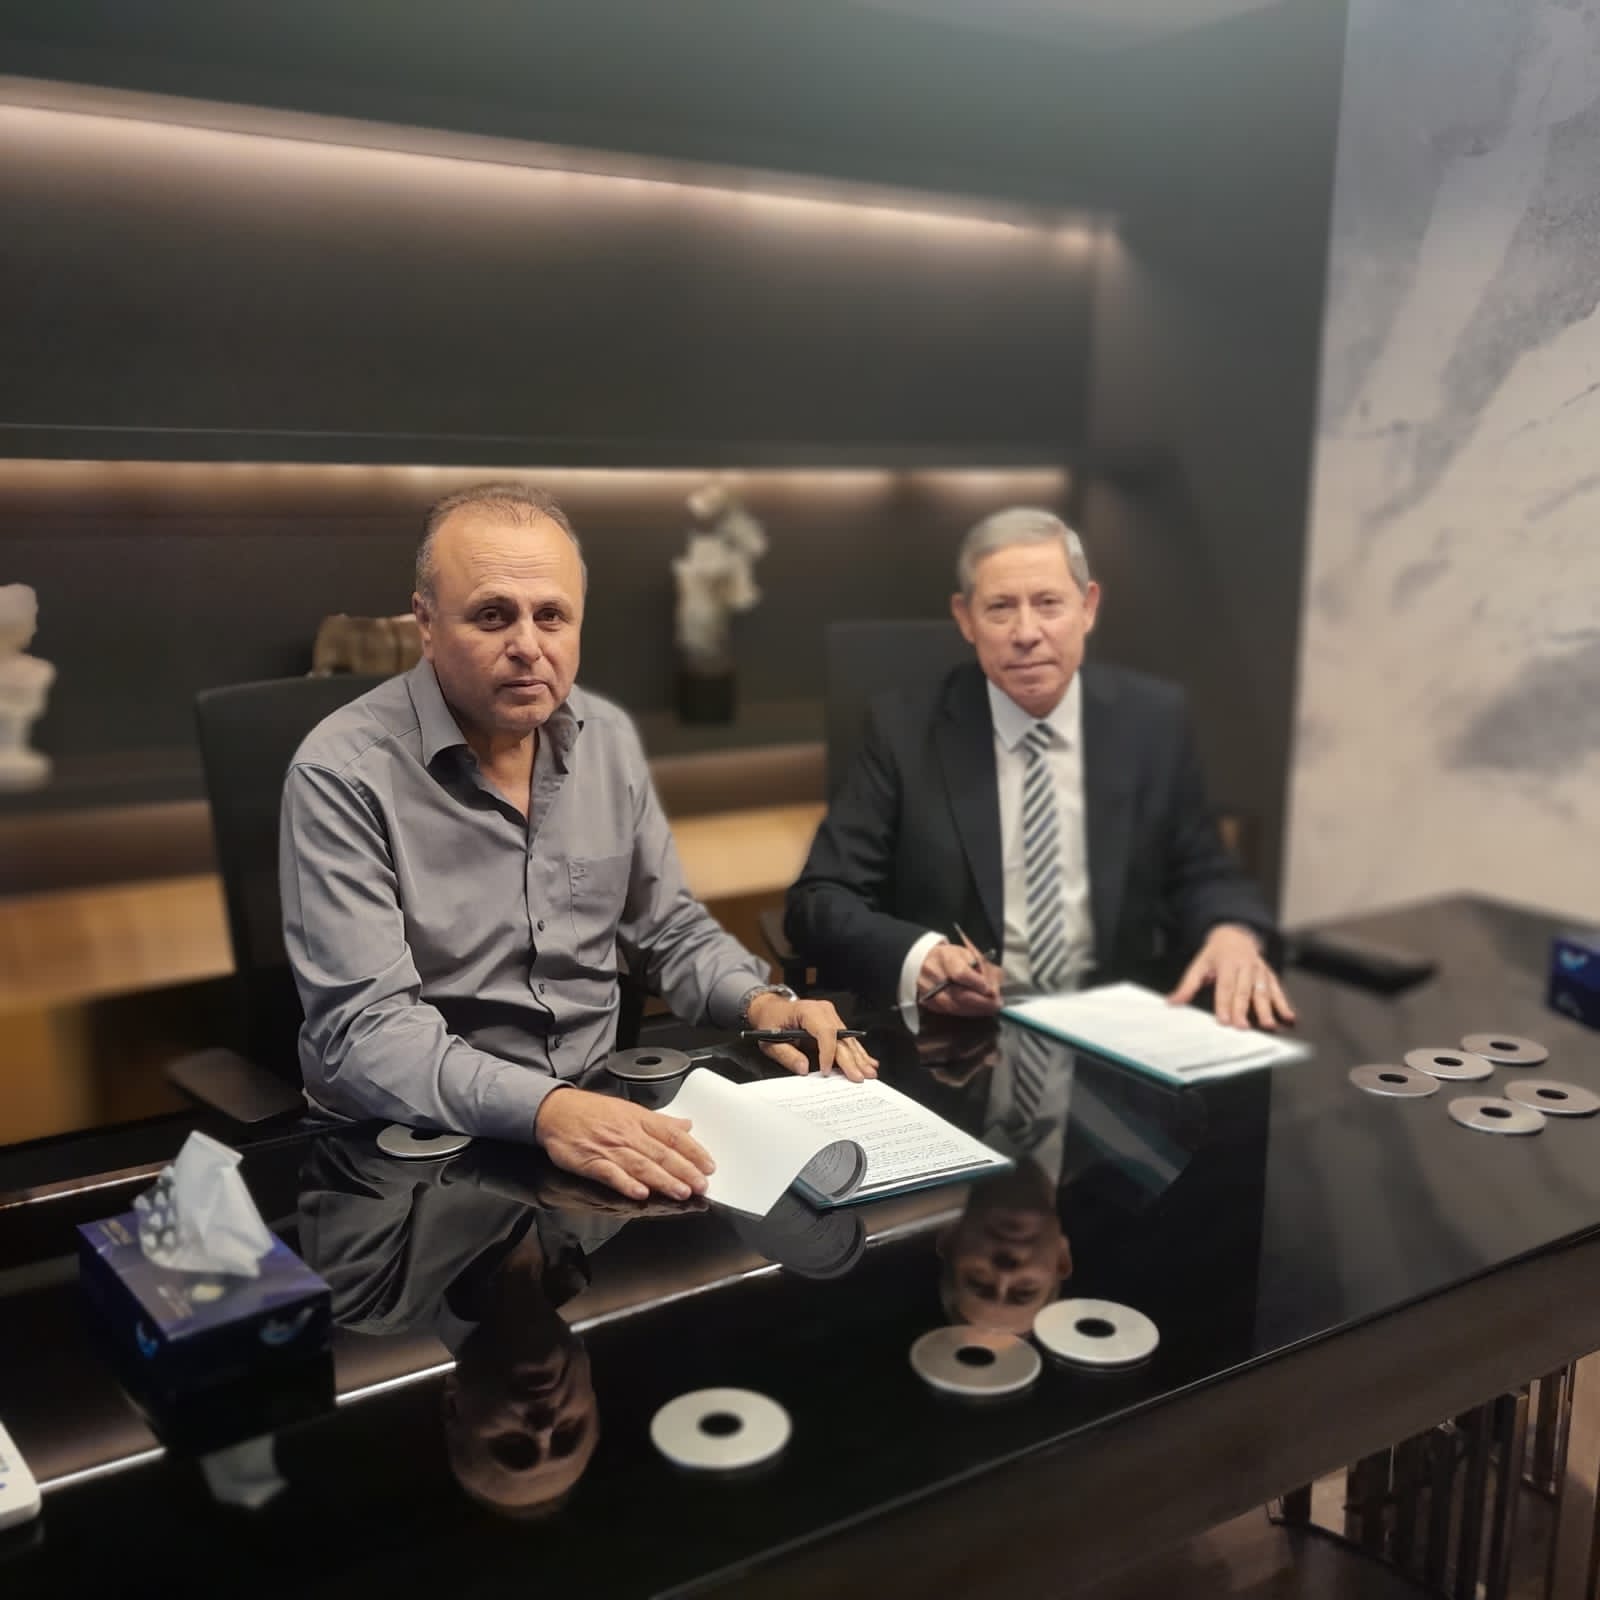 عمرو الفقي الرئيس التنفيذي والعضو المنتدب للشركة المتحدة للخدمات الإعلامية مع المستشار بهاء المري